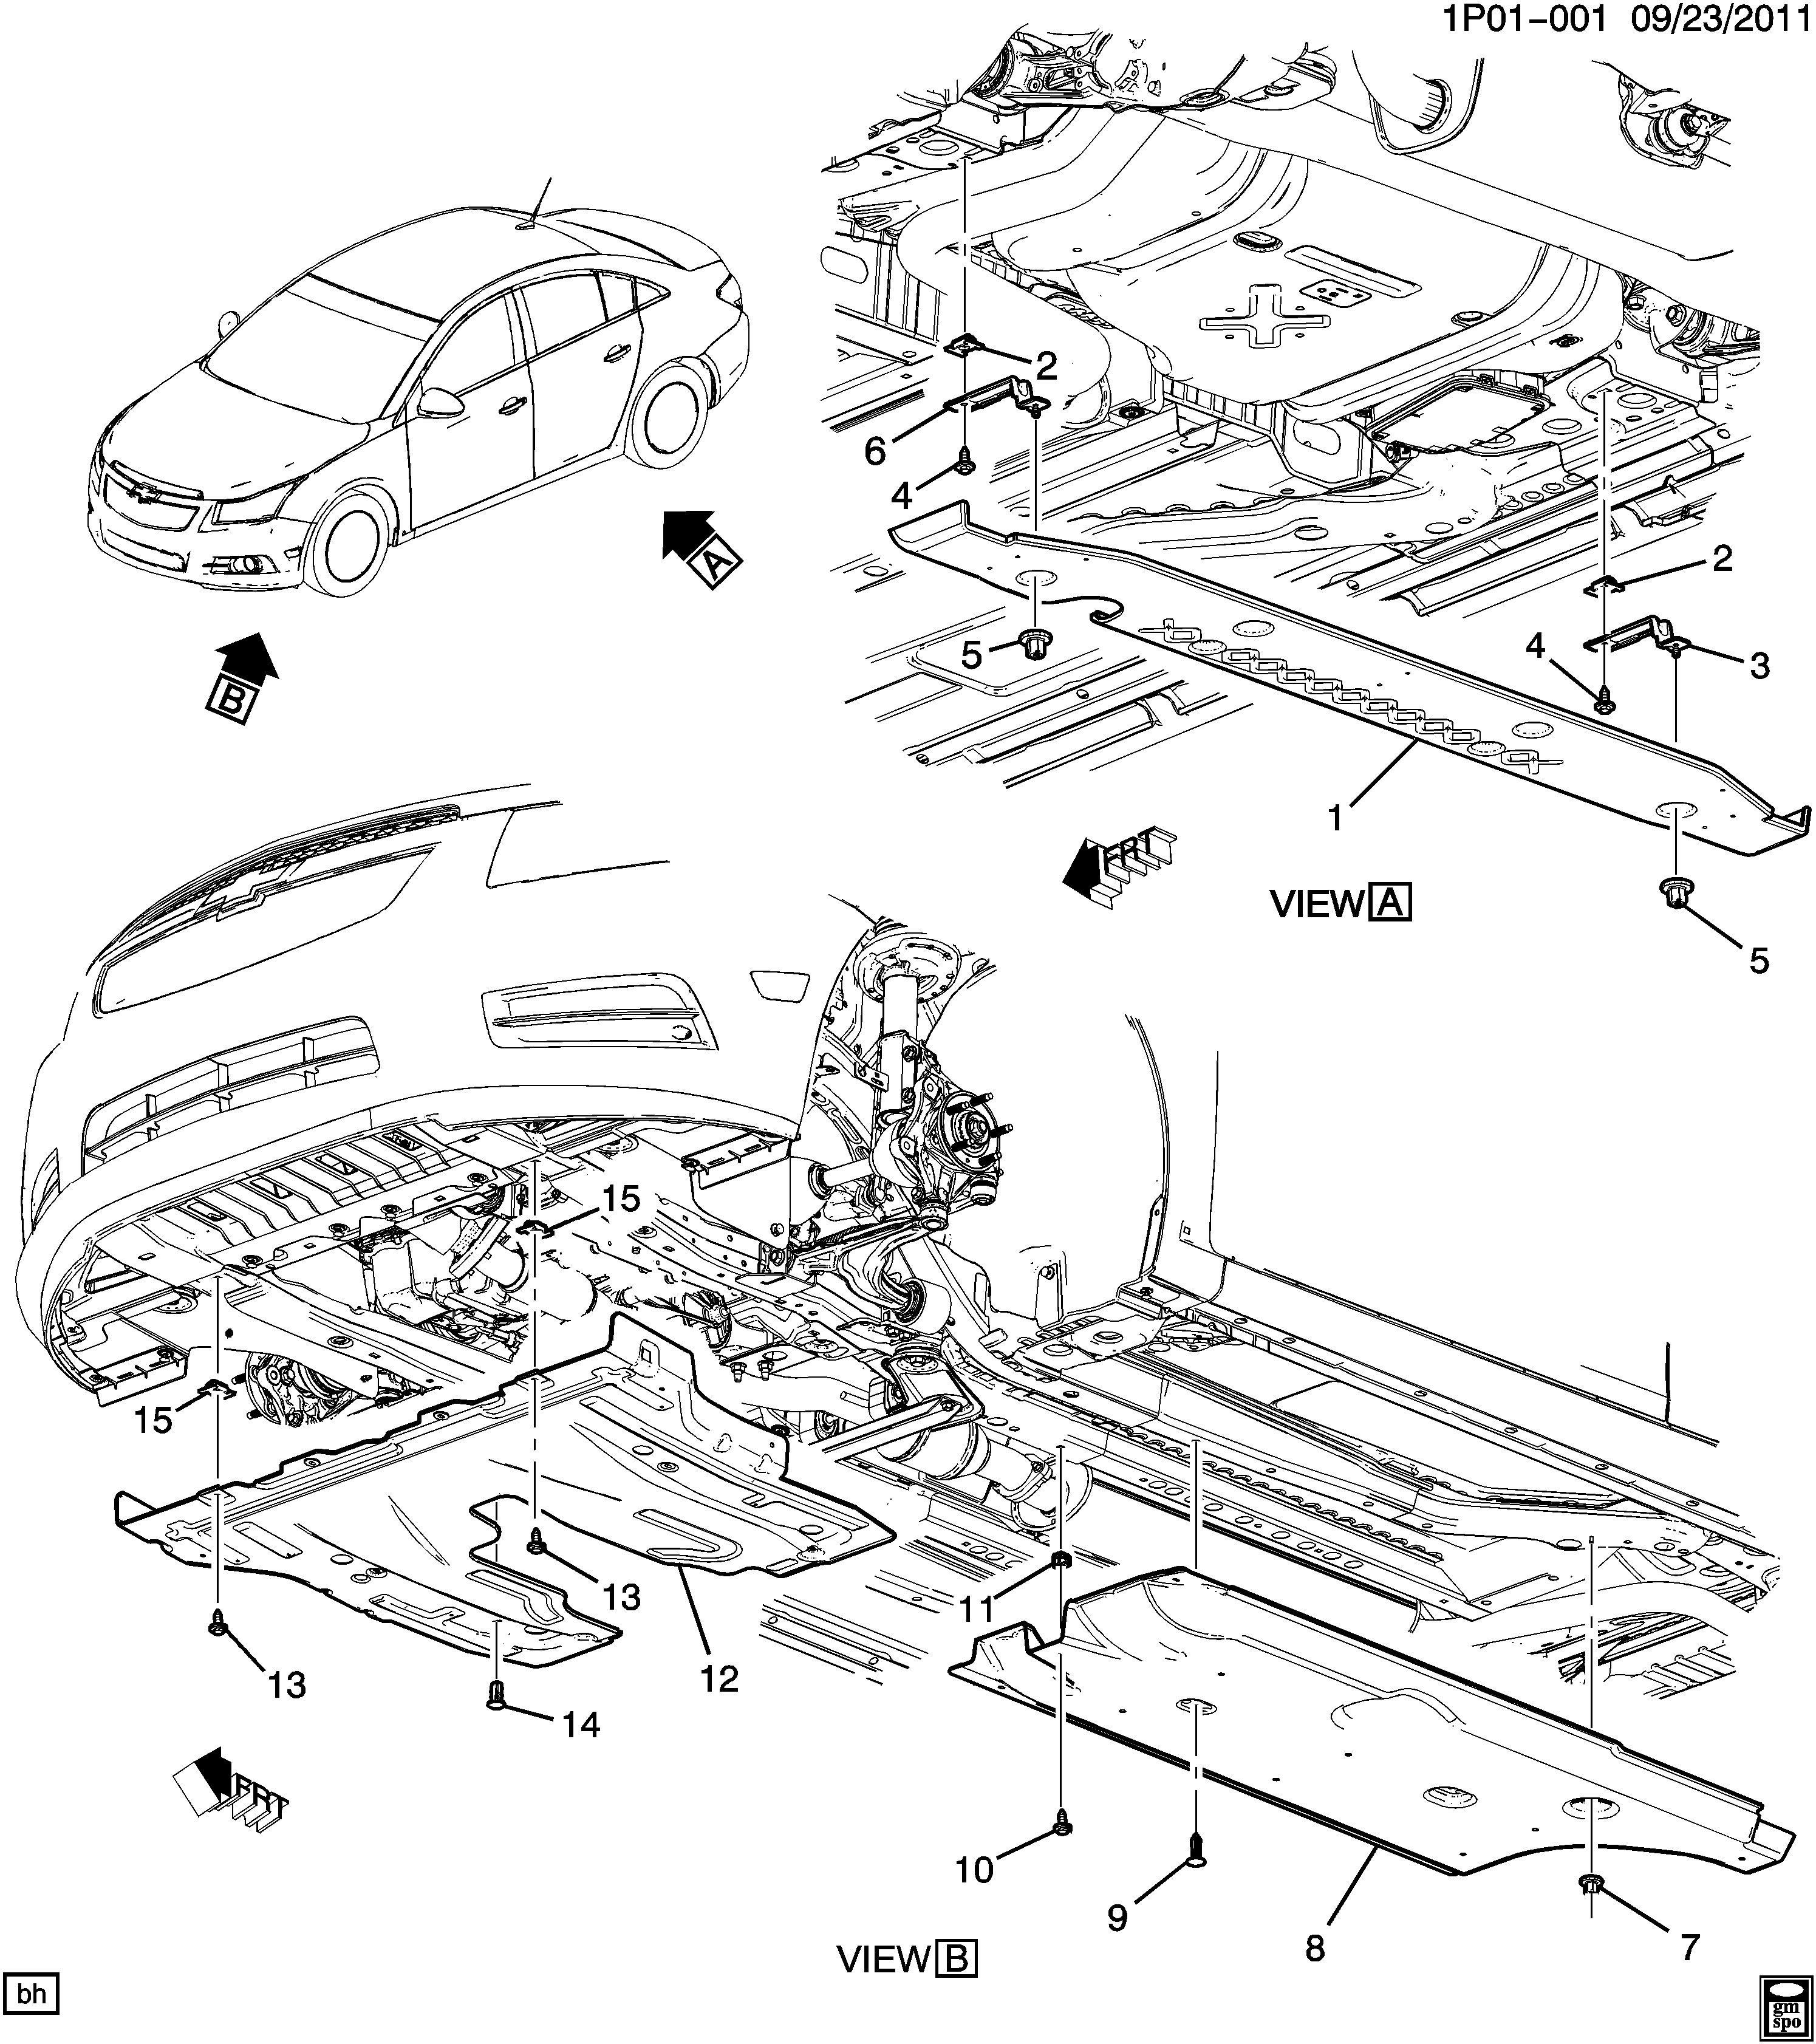 Diagram Of Car Underside Chevy Cruze Eco Engine Diagram Wiring Diagrams Of Diagram Of Car Underside